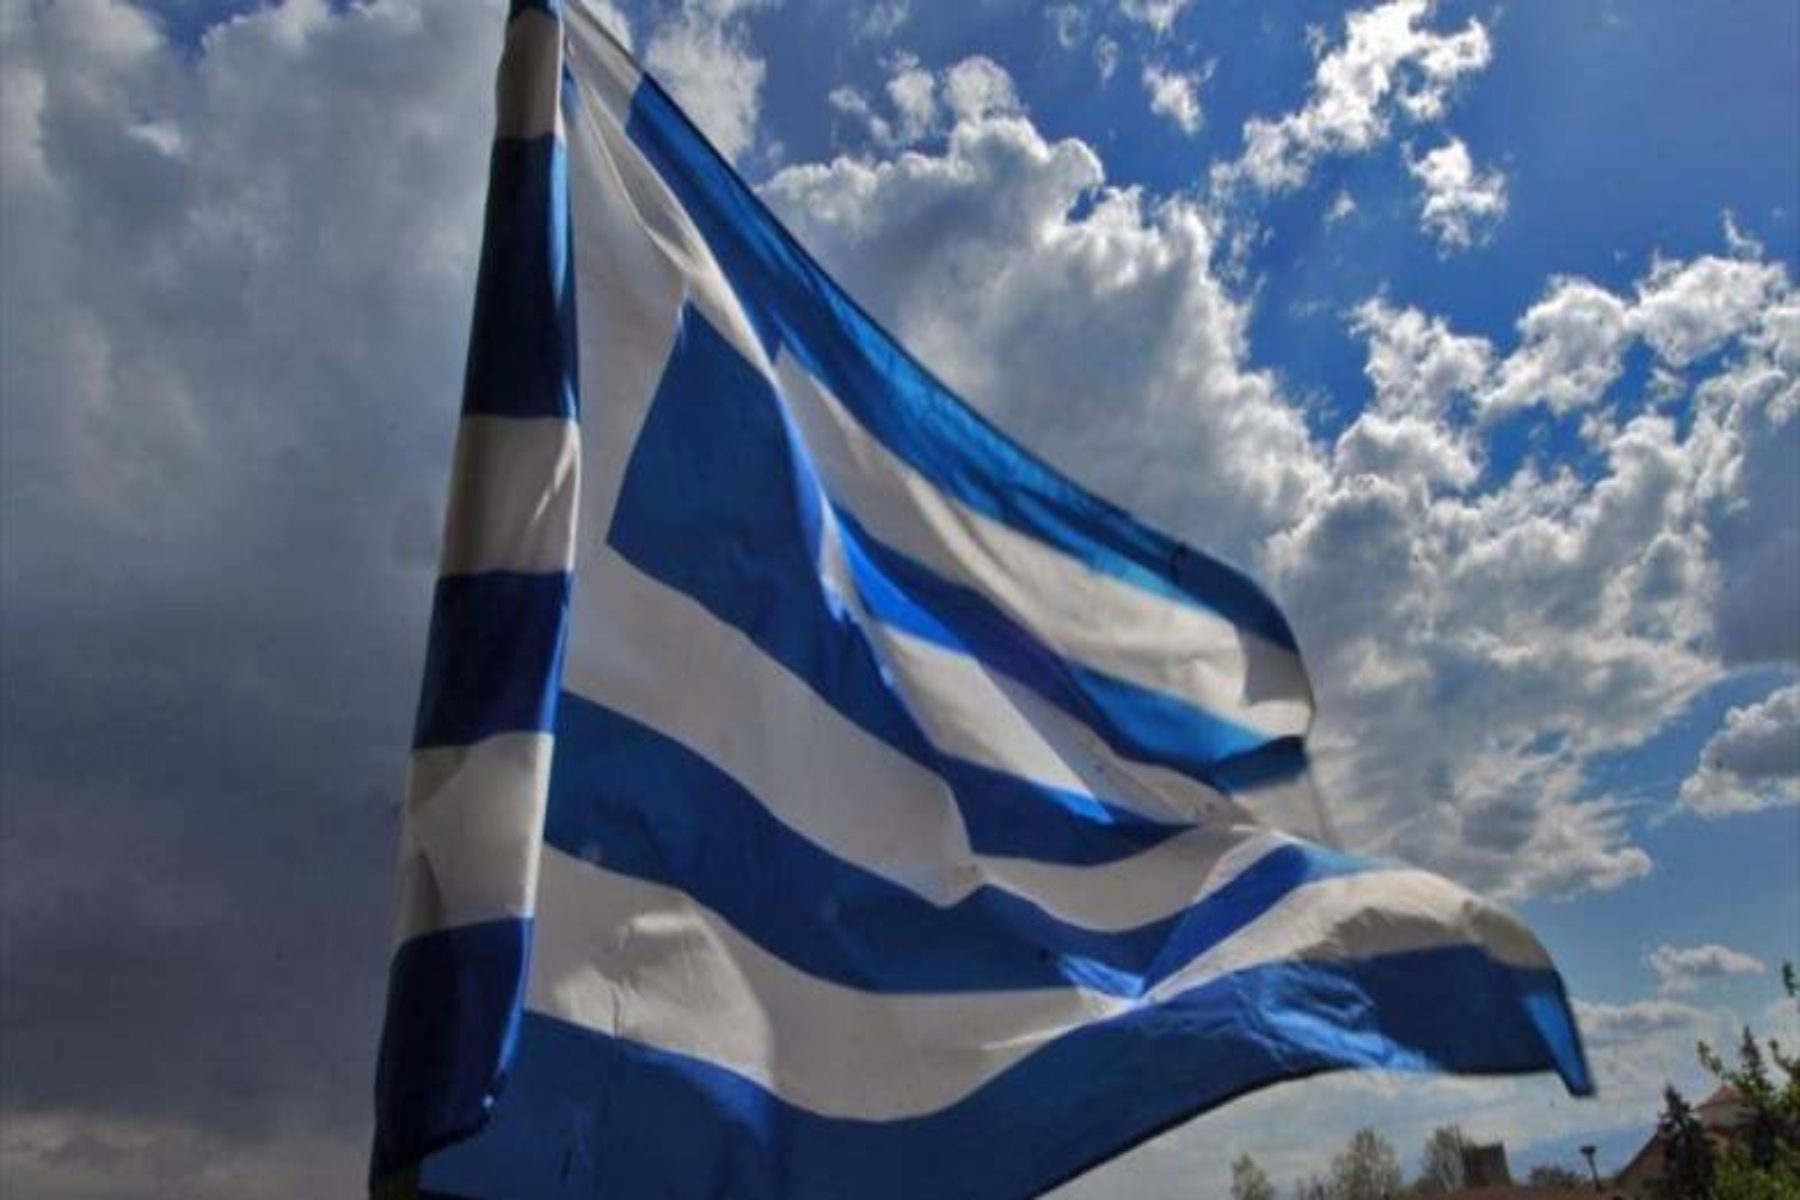 28η Οκτωβρίου 1940: Η Επέτειος του ΟΧΙ τιμάται με λαμπρότητα σε ολόκληρη την Ελλάδα